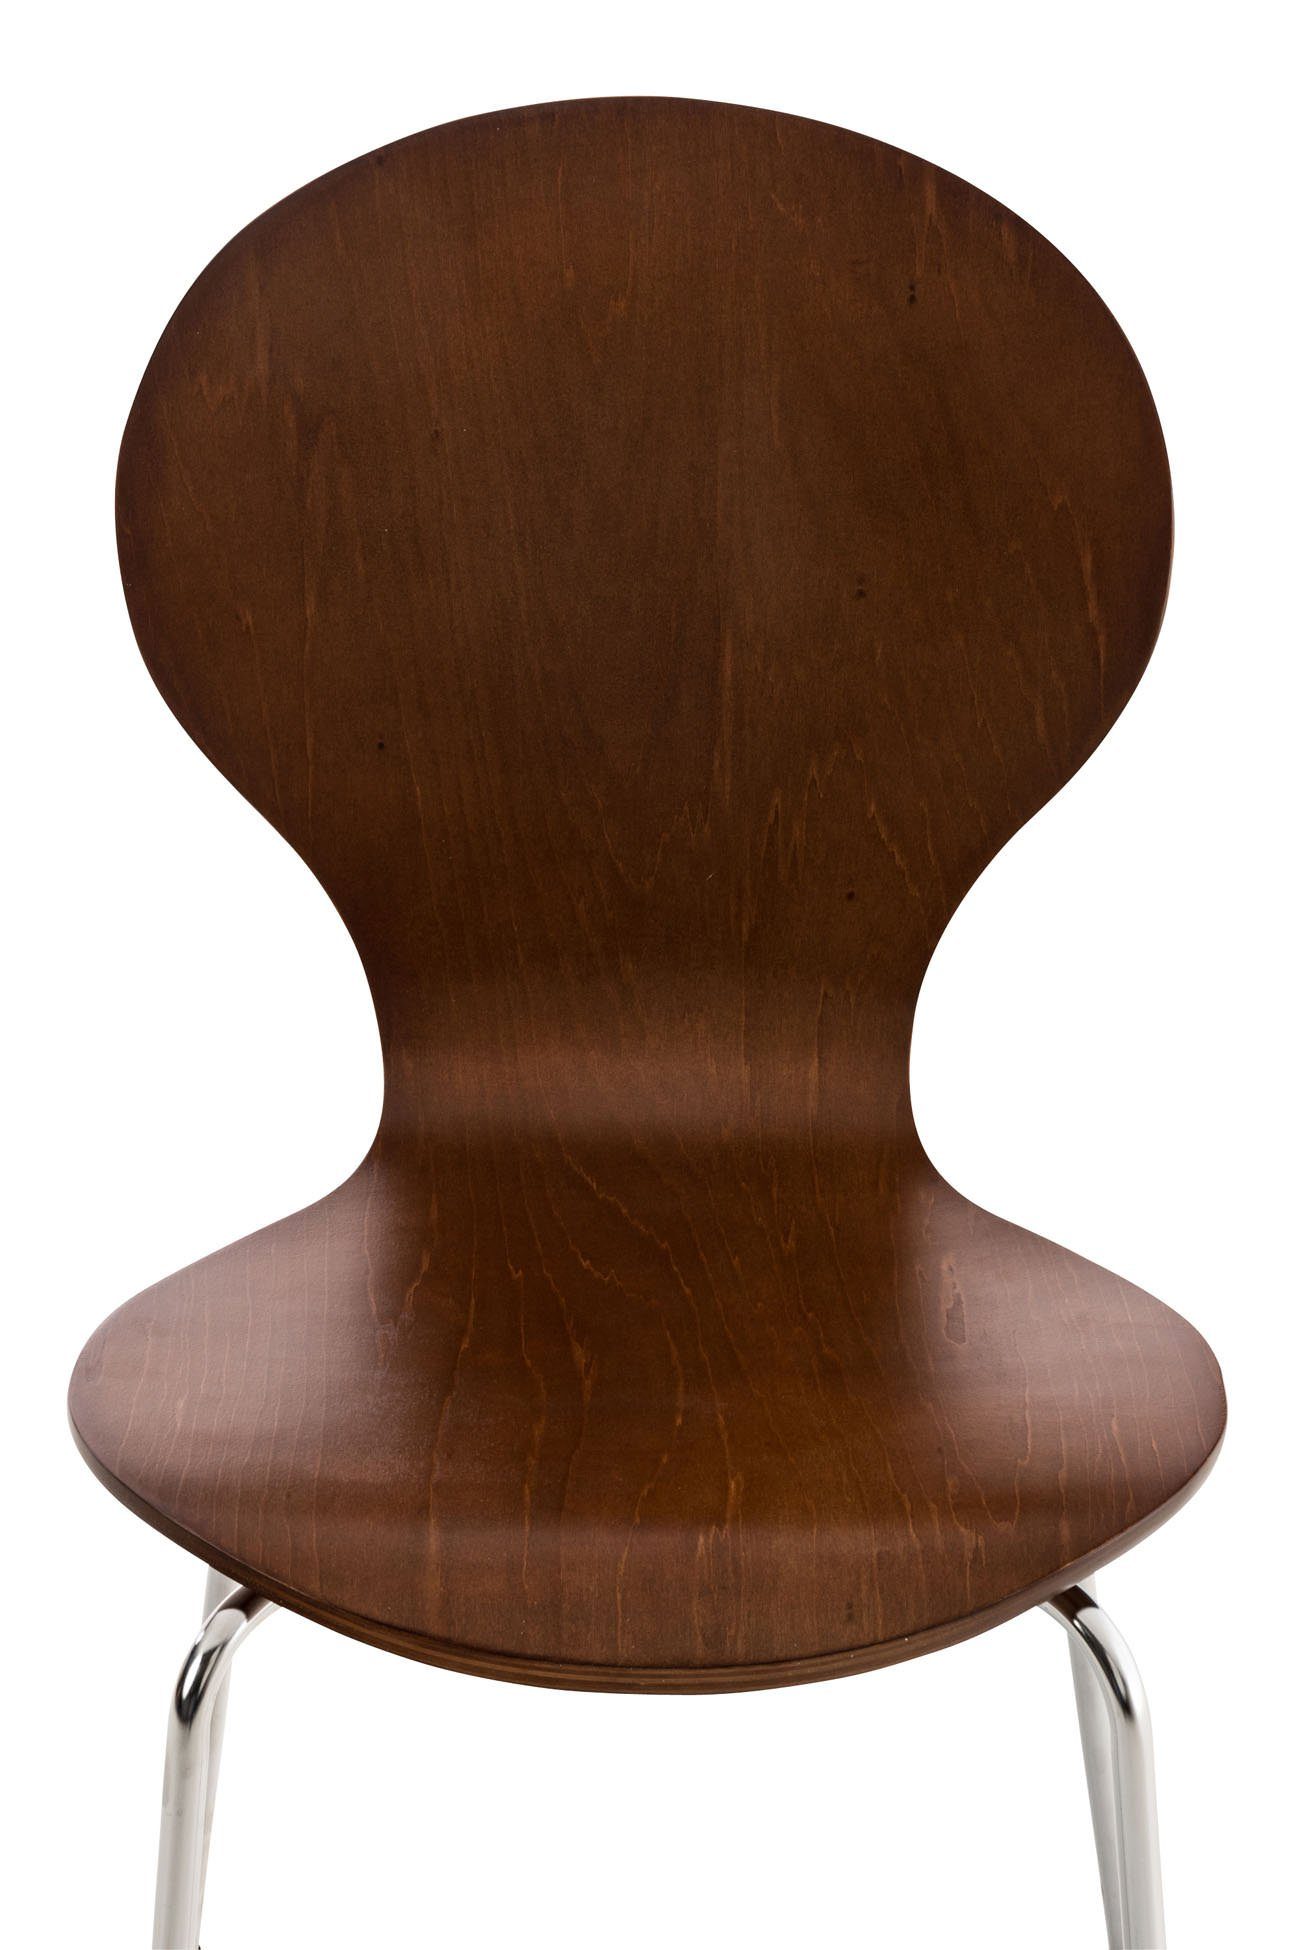 TPFLiving Besucherstuhl braun Holz - Konferenzstuhl ergonomisch - Warteraumstuhl - mit Sitzfläche: Gestell: Messestuhl), - chrom Metall Daggy Sitzfläche (Besprechungsstuhl geformter